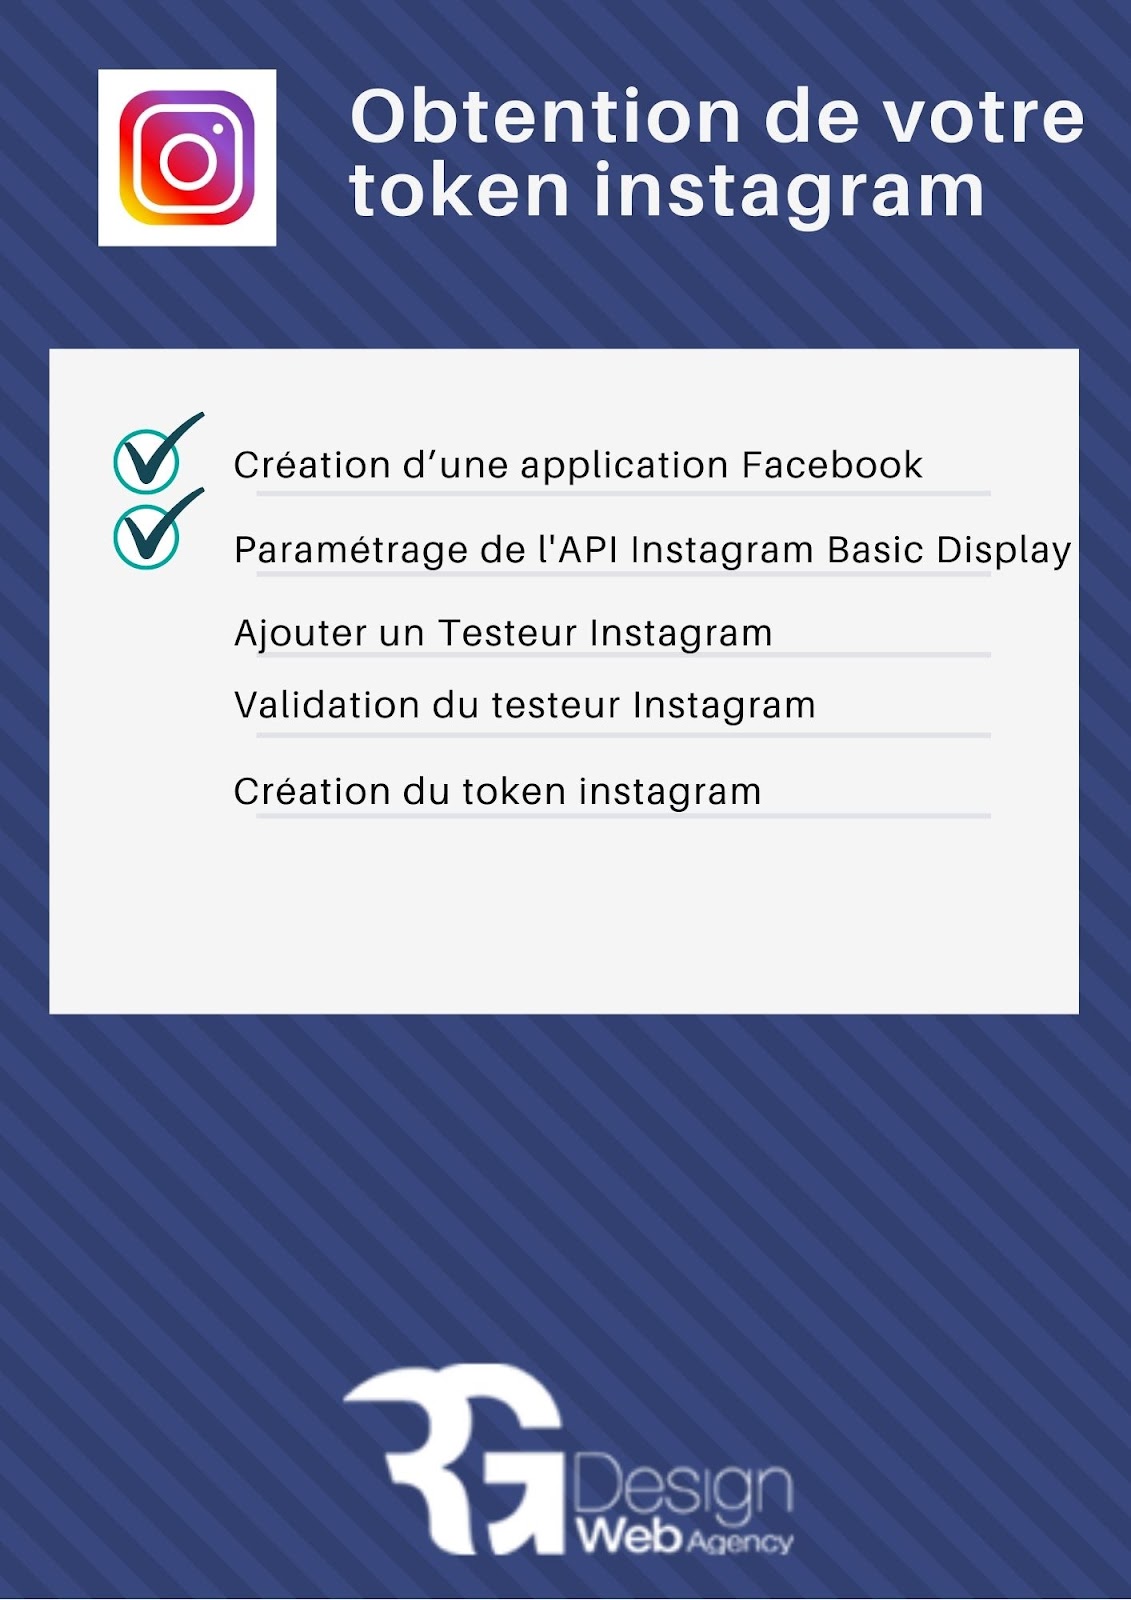 token instagram checklist obtention
